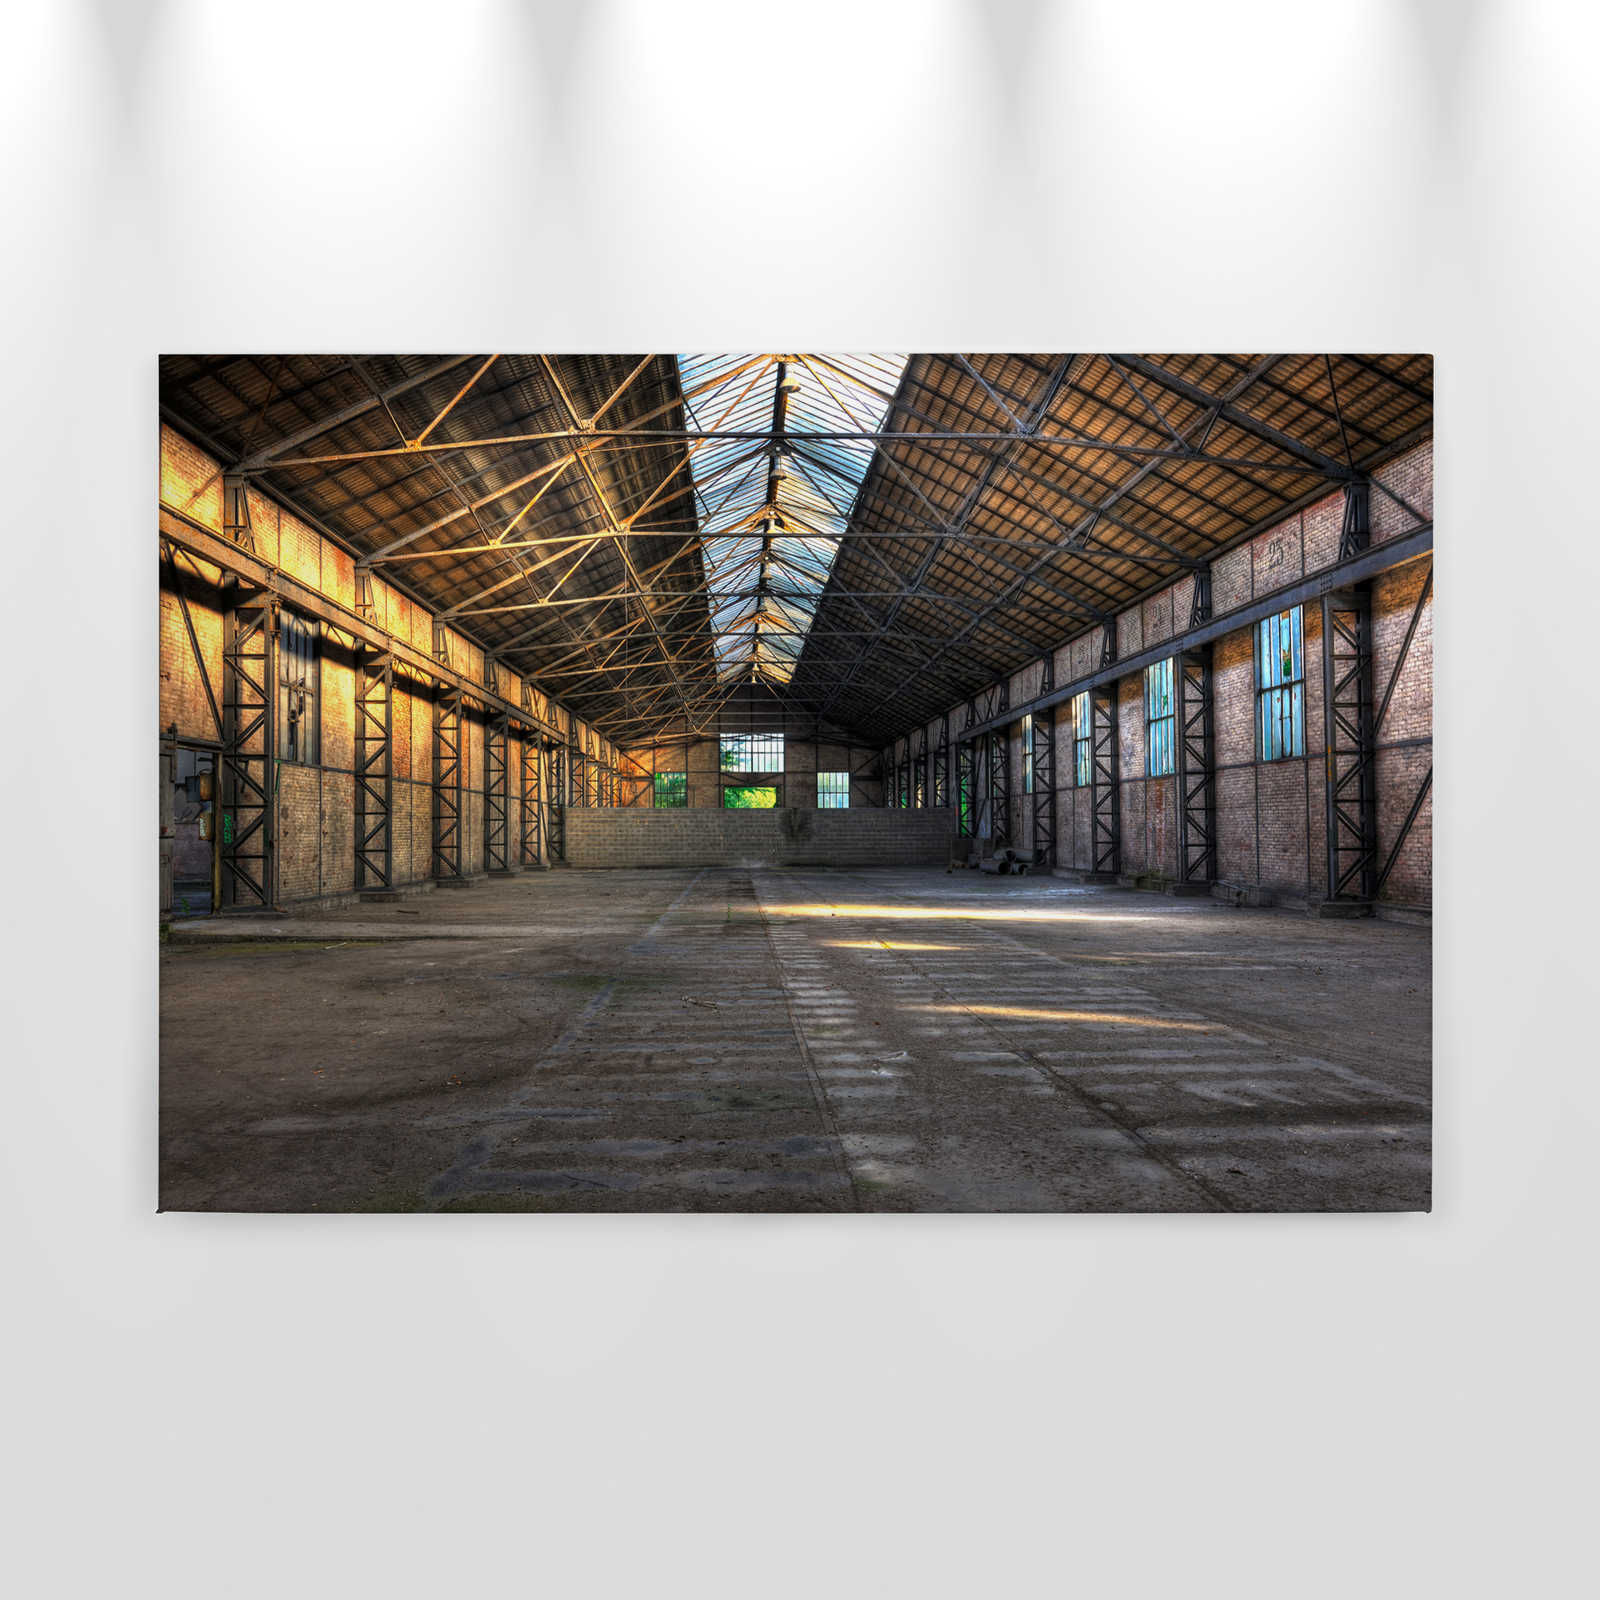             Leinwand mit verlassener Industriehalle mit 3D-Effekt – 0,90 m x 0,60 m
        